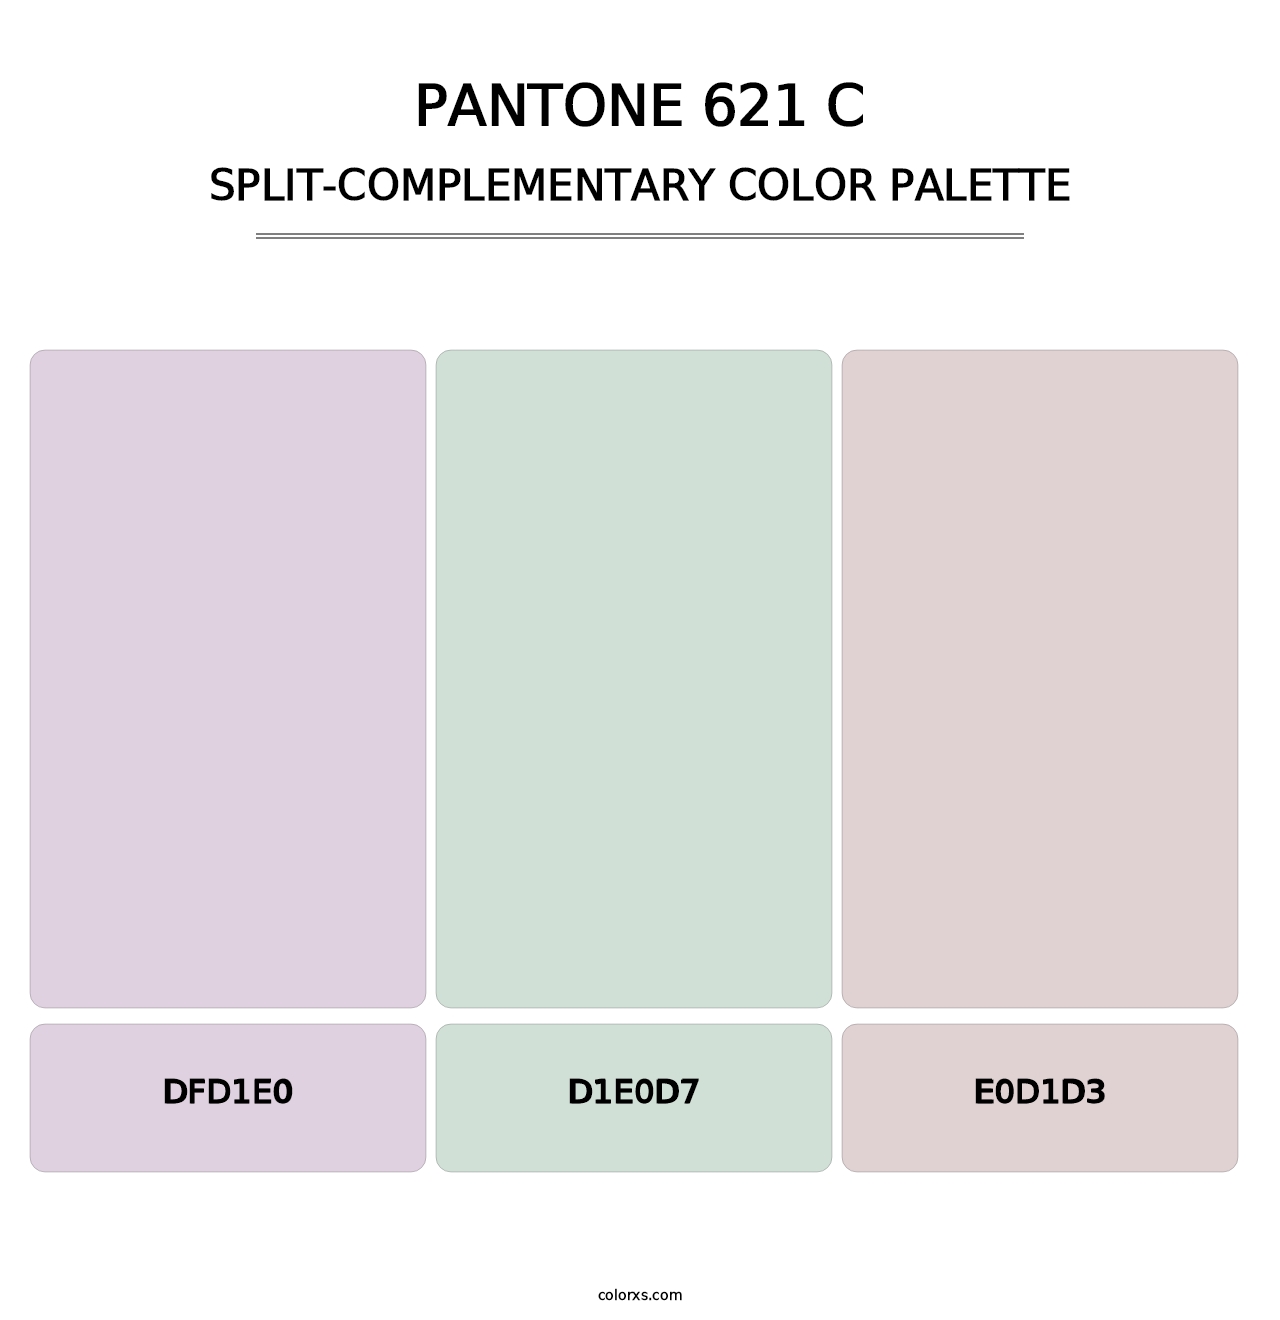 PANTONE 621 C - Split-Complementary Color Palette